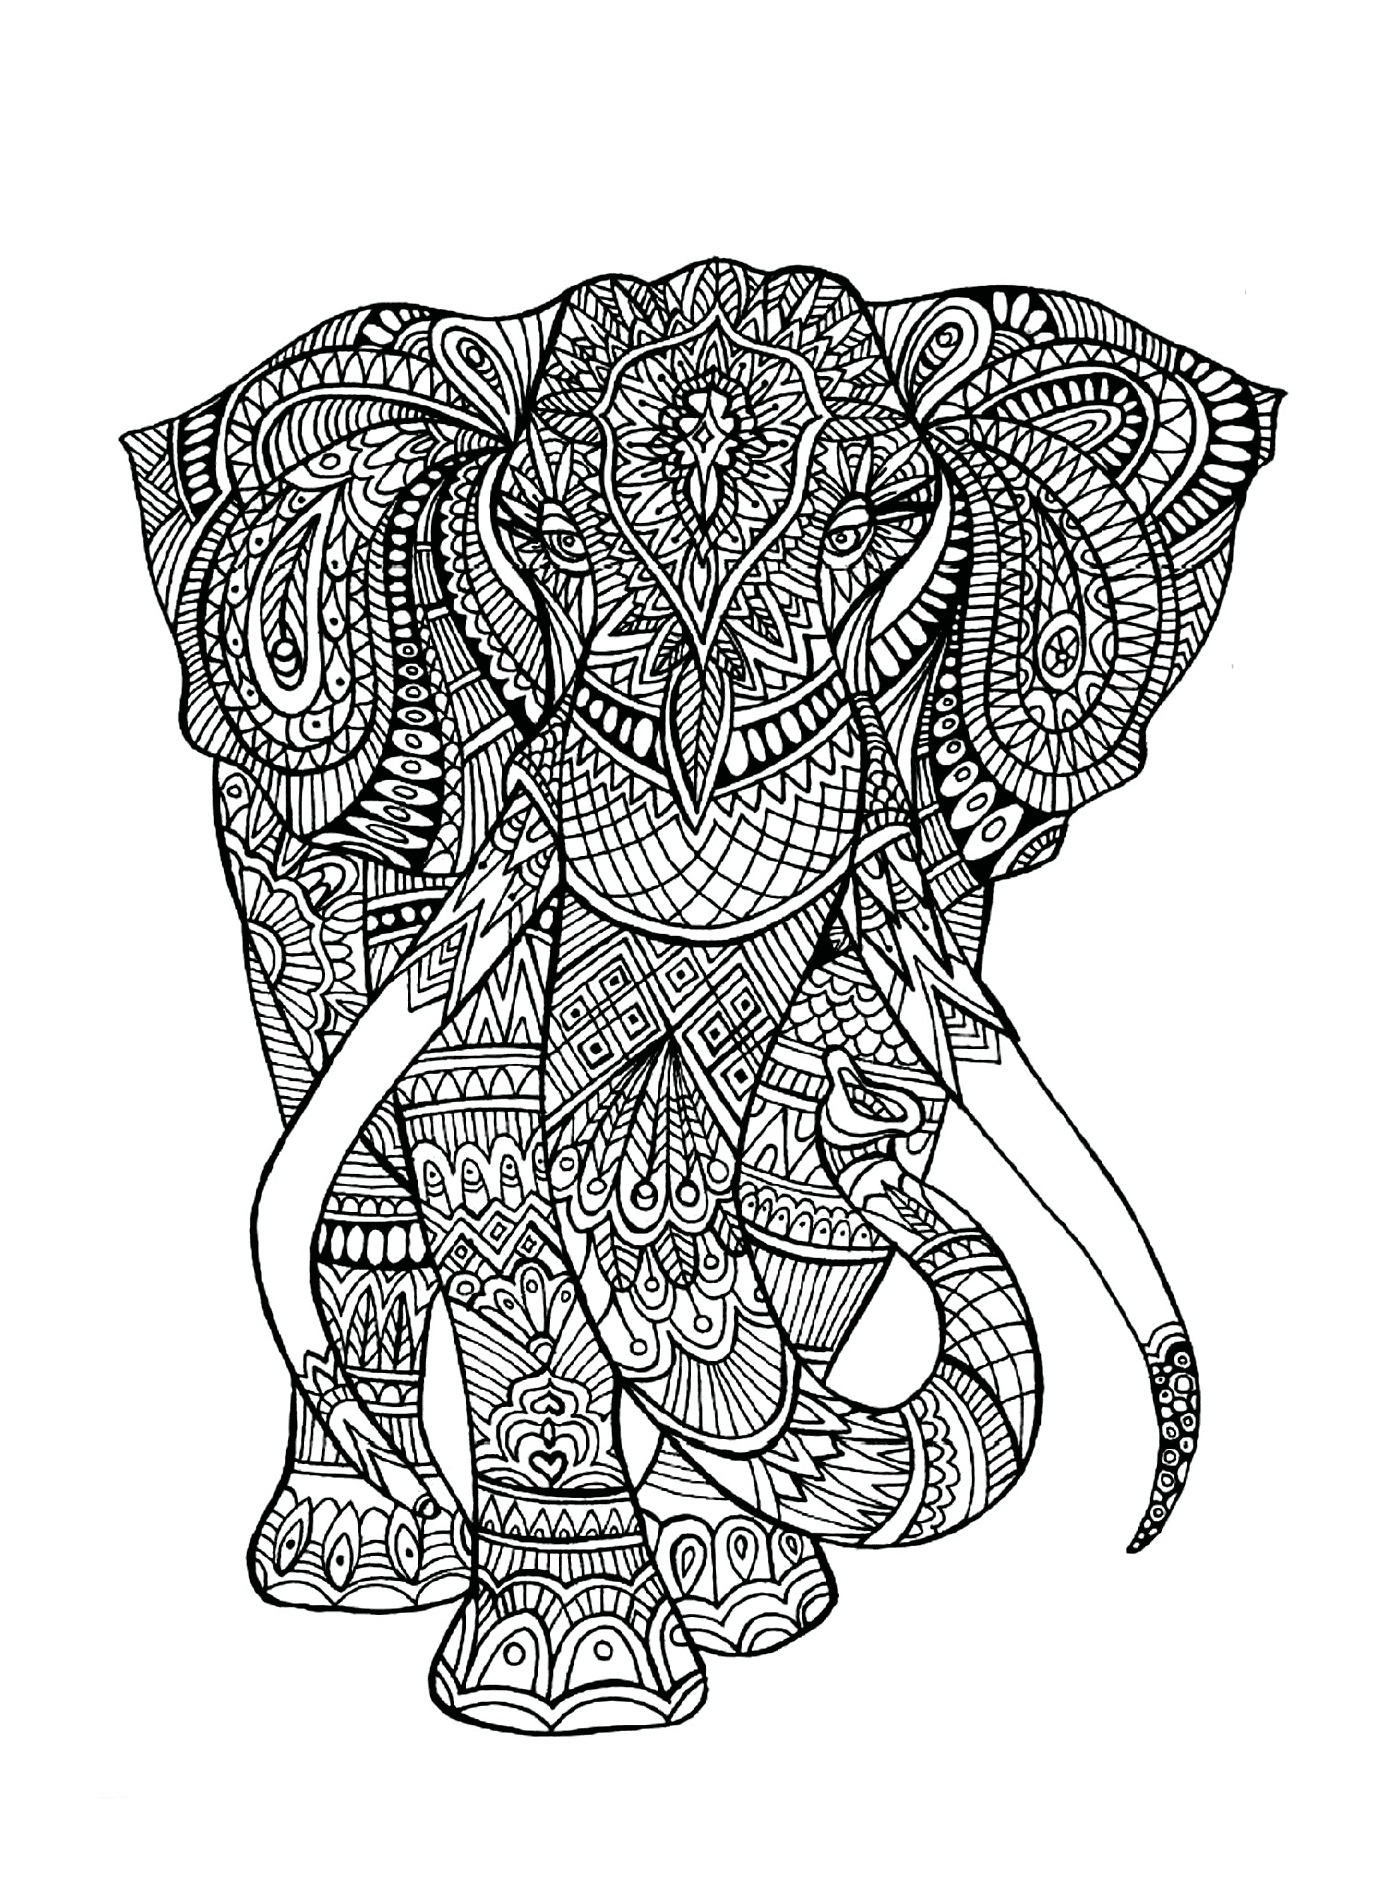   Un éléphant avec des motifs complexes sur son corps 